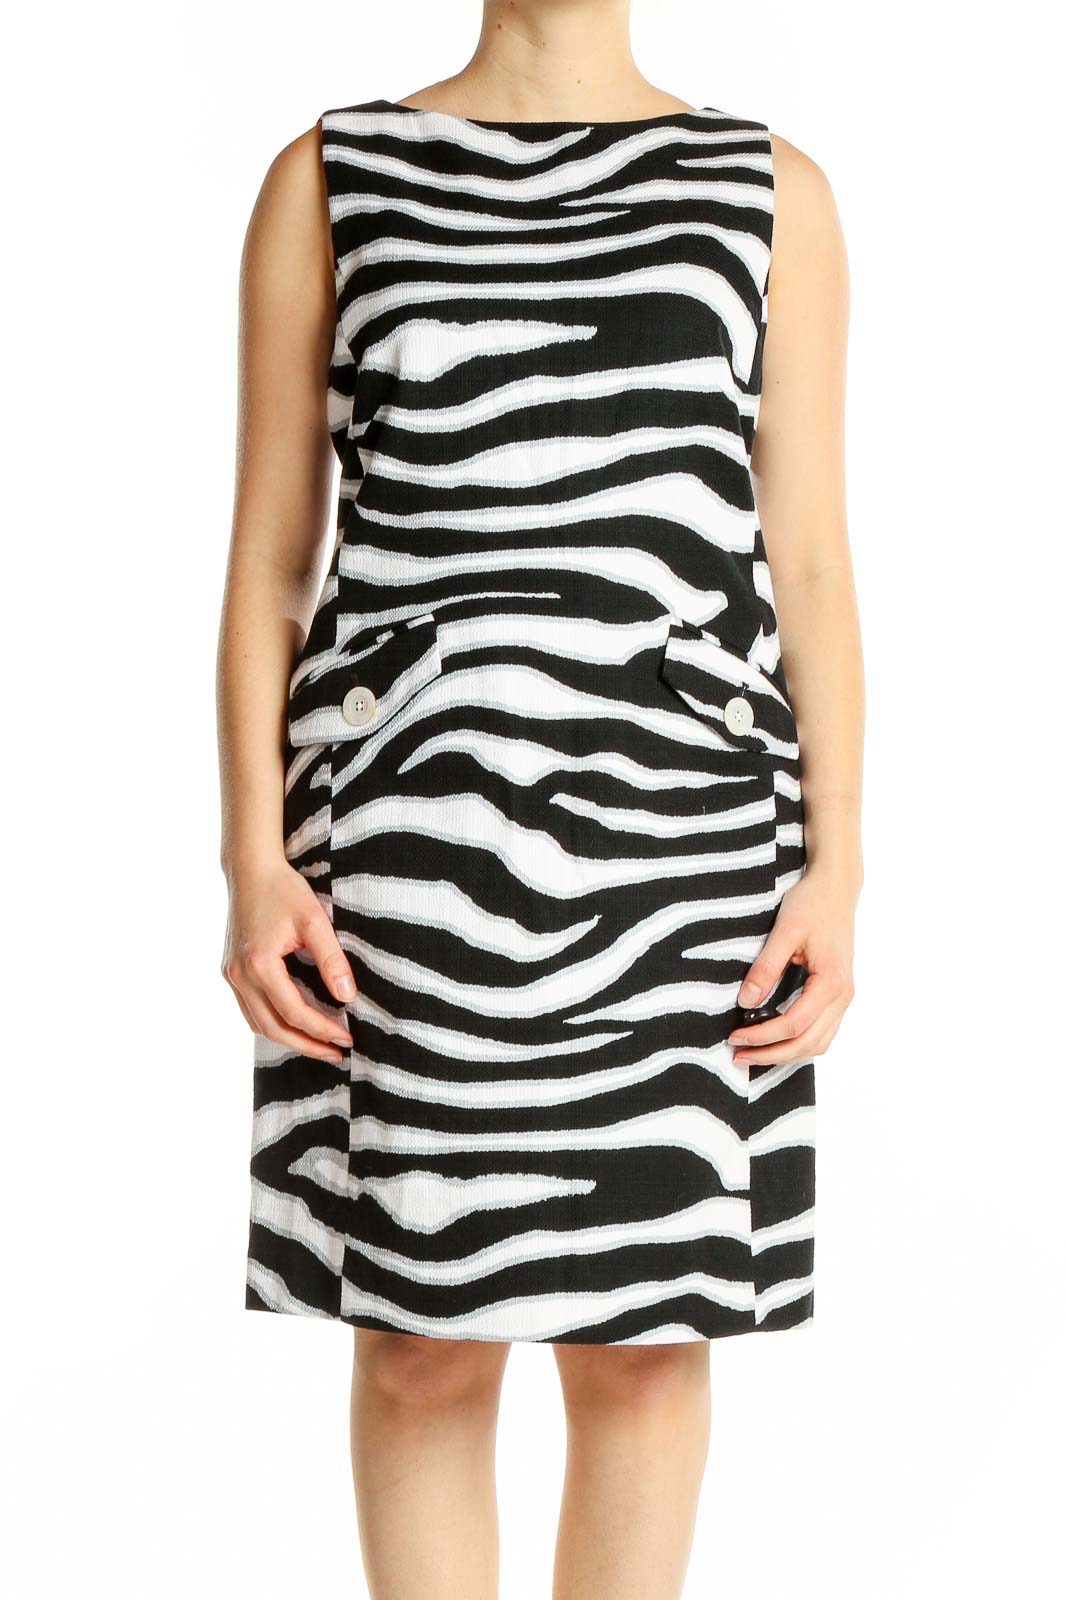 Black White Zebra Print Dress Front